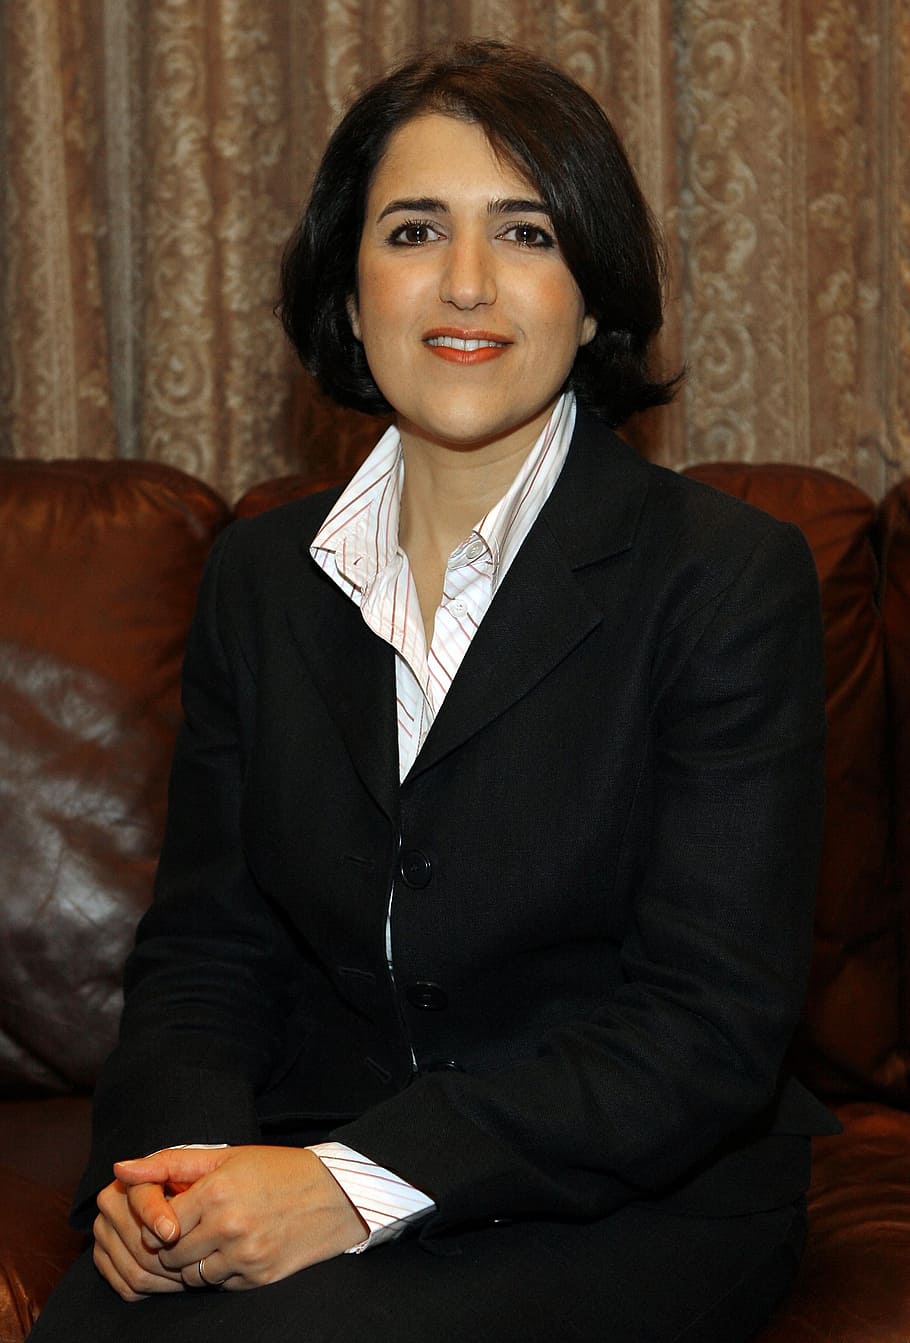 bayan sami abdul rahman, curdistão, regional, governo, representante, político, política, olhando para a câmera, dentro de casa, vista frontal